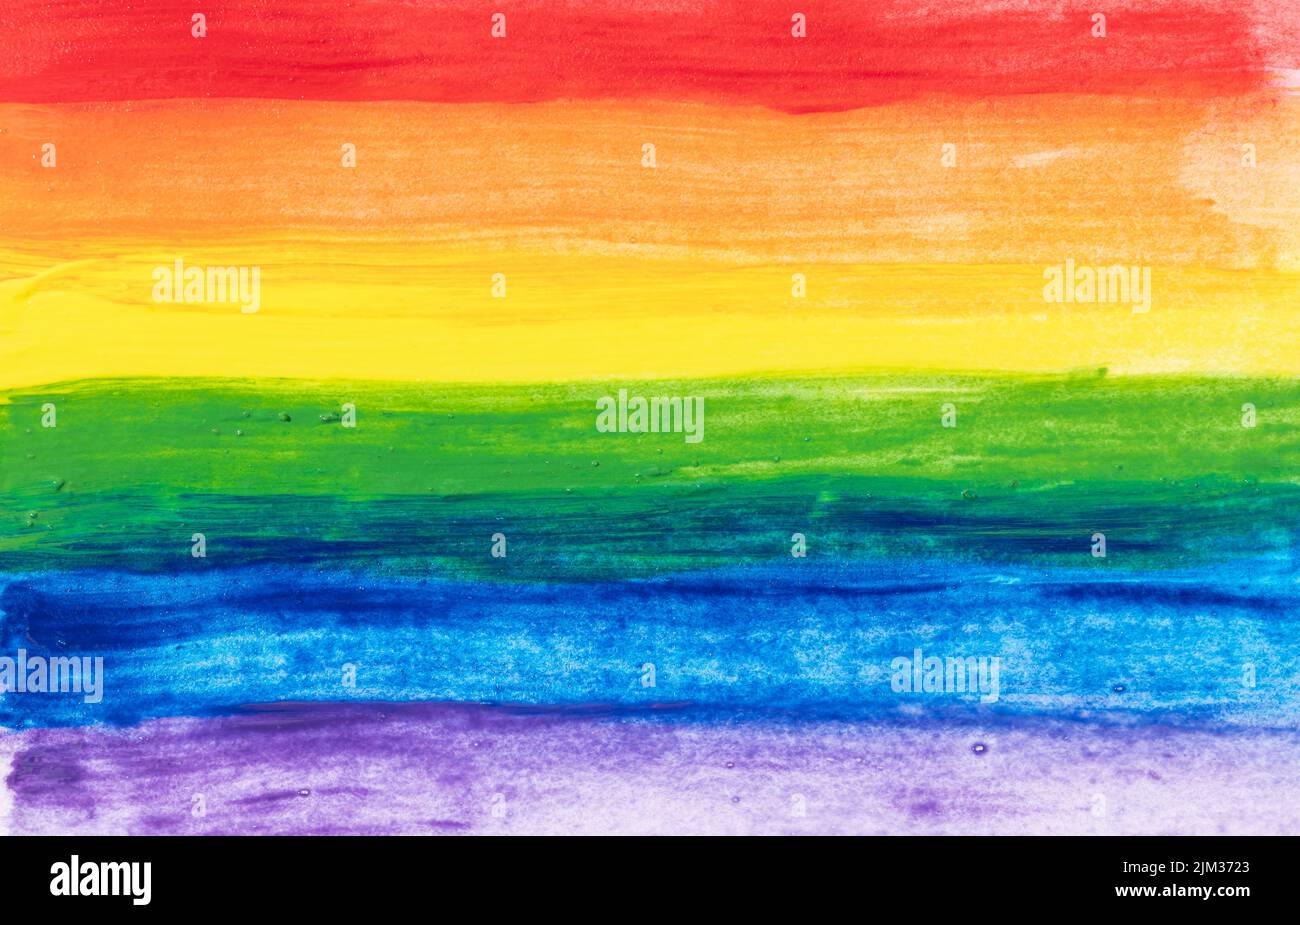 Bandera de orgullo arcoiris pintada a mano con acuarelas. Resumen LGBT Rainbow bandera de fondo. Fotograma completo Foto de stock